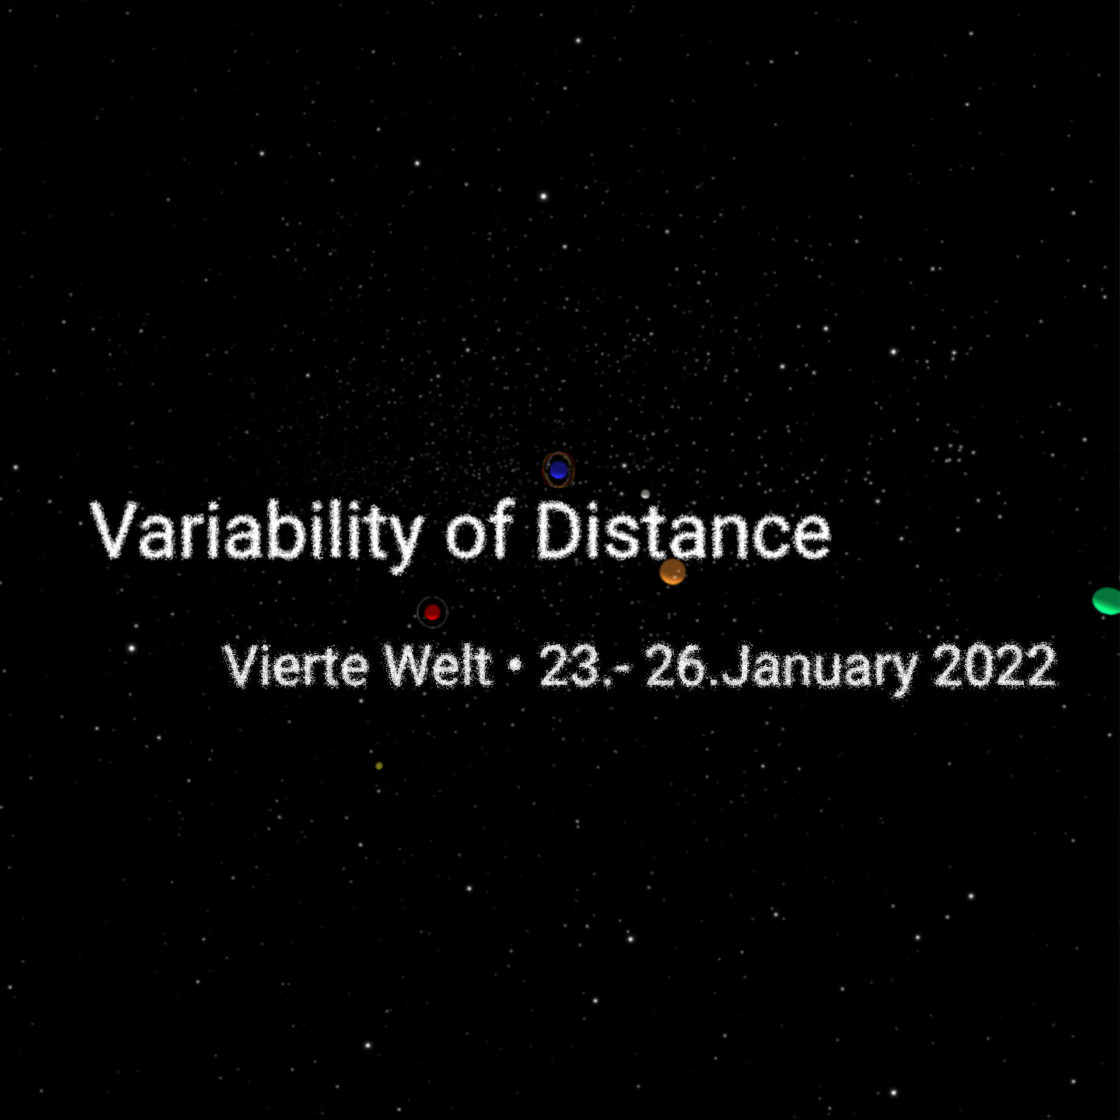 Variability of Distance Vierte Welt 23 - 26 January 2022 im Hintergrund sind Planeten schwebend